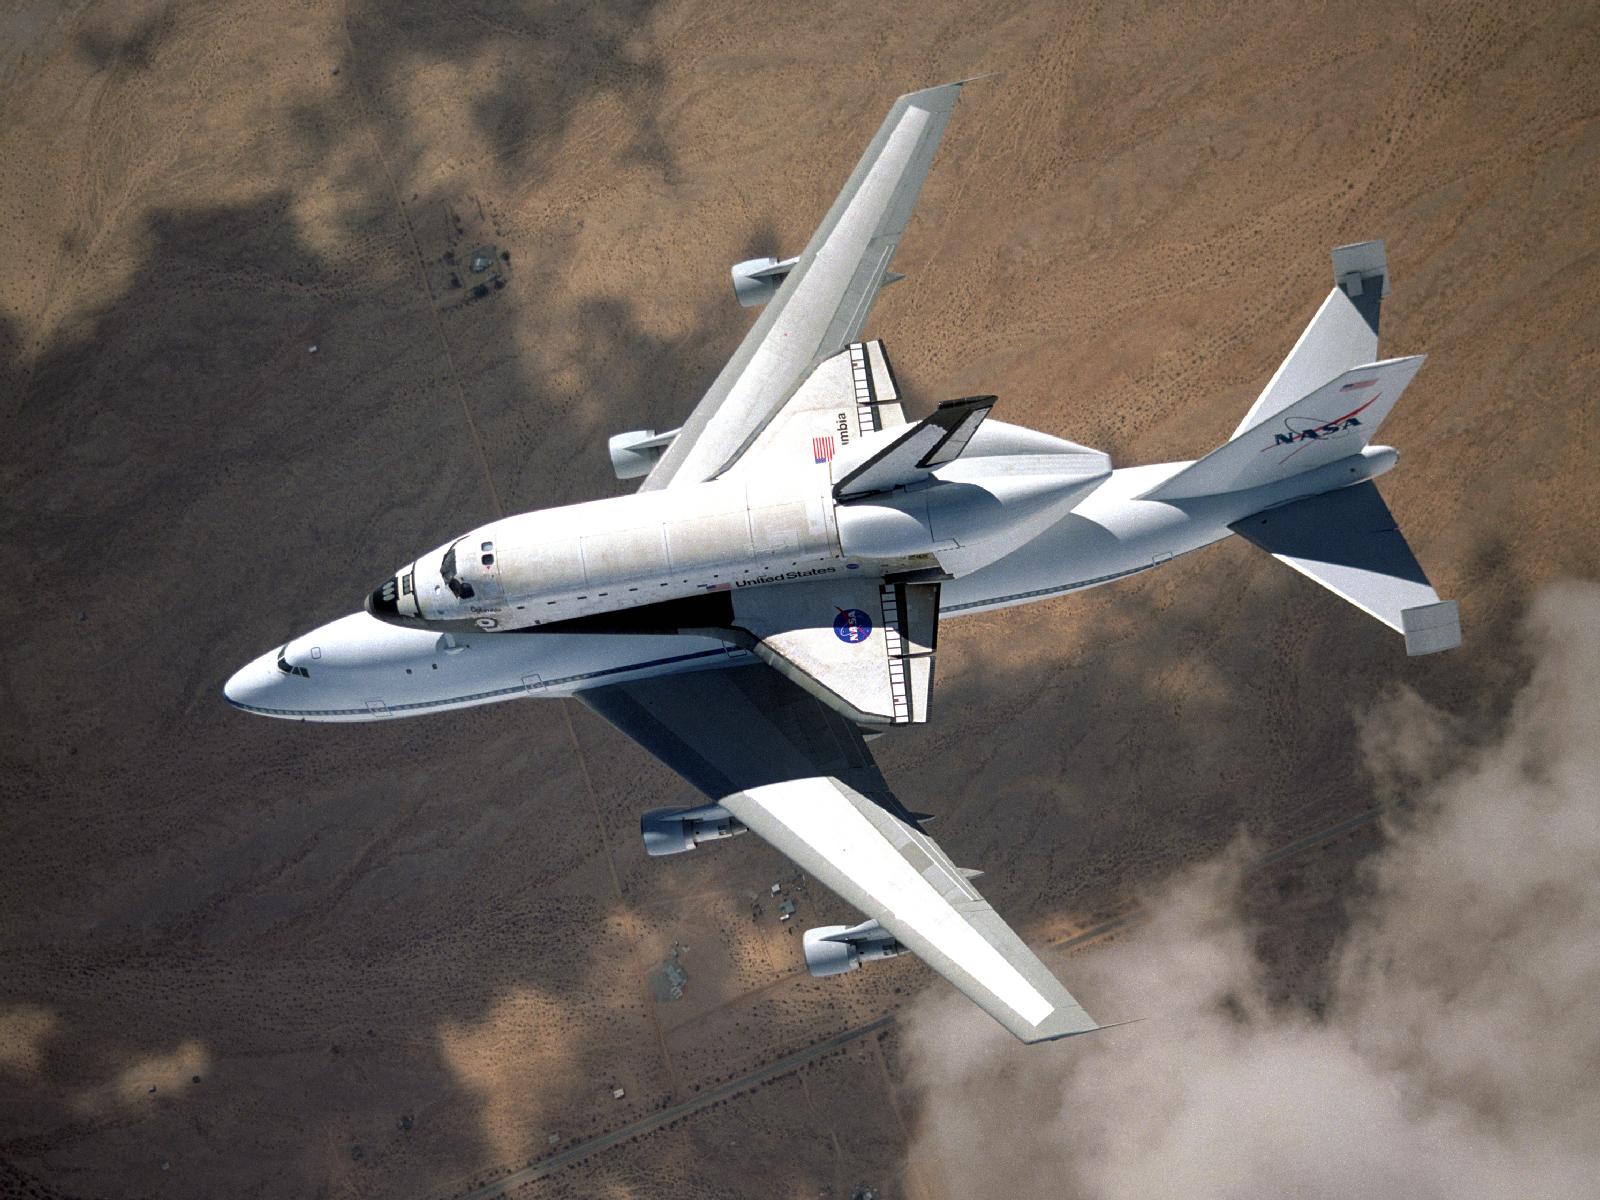 Űrrepülőgép a Boeing hátán: az óriás kiegészítő vezérsíkokat kapott, mert az eredetit leárnyékolja a hátán hordott másik gép